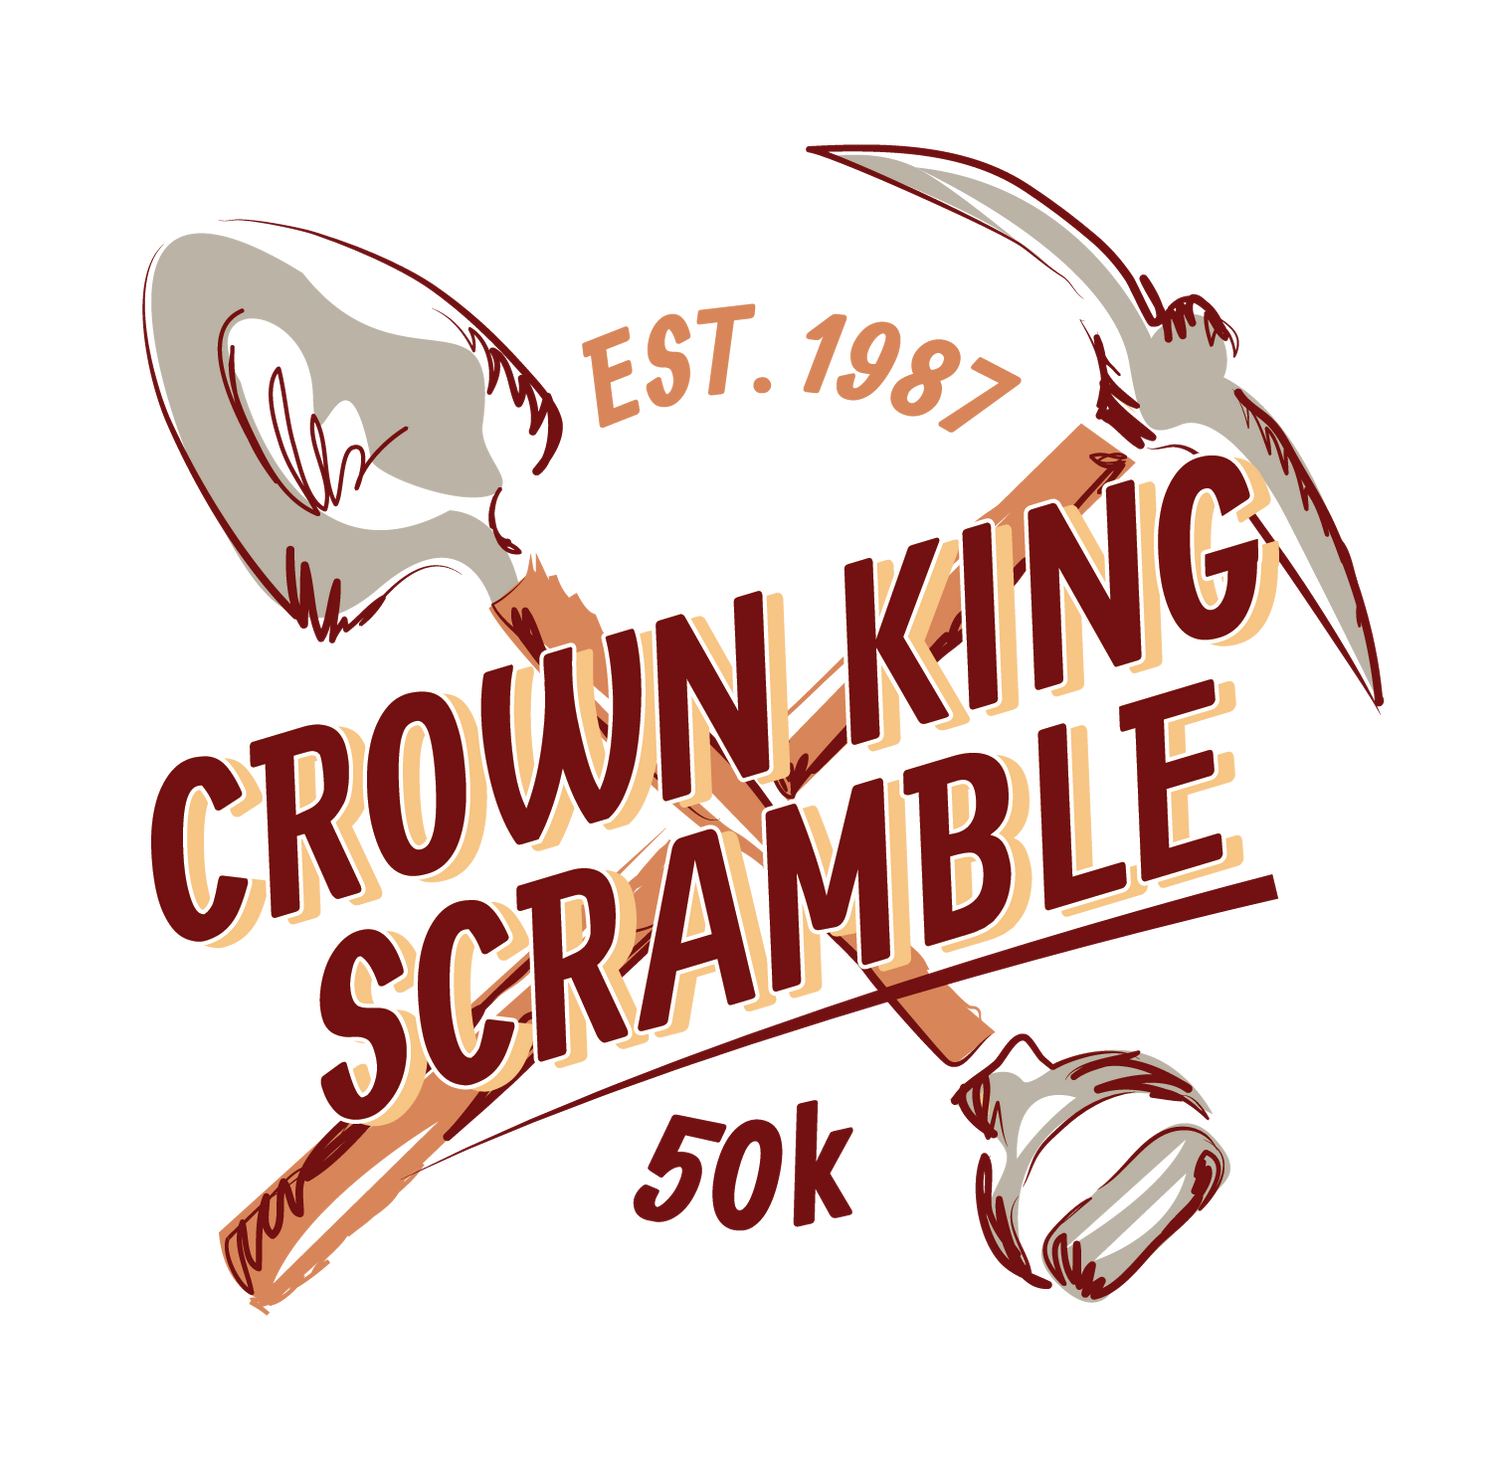 Crown King Scramble